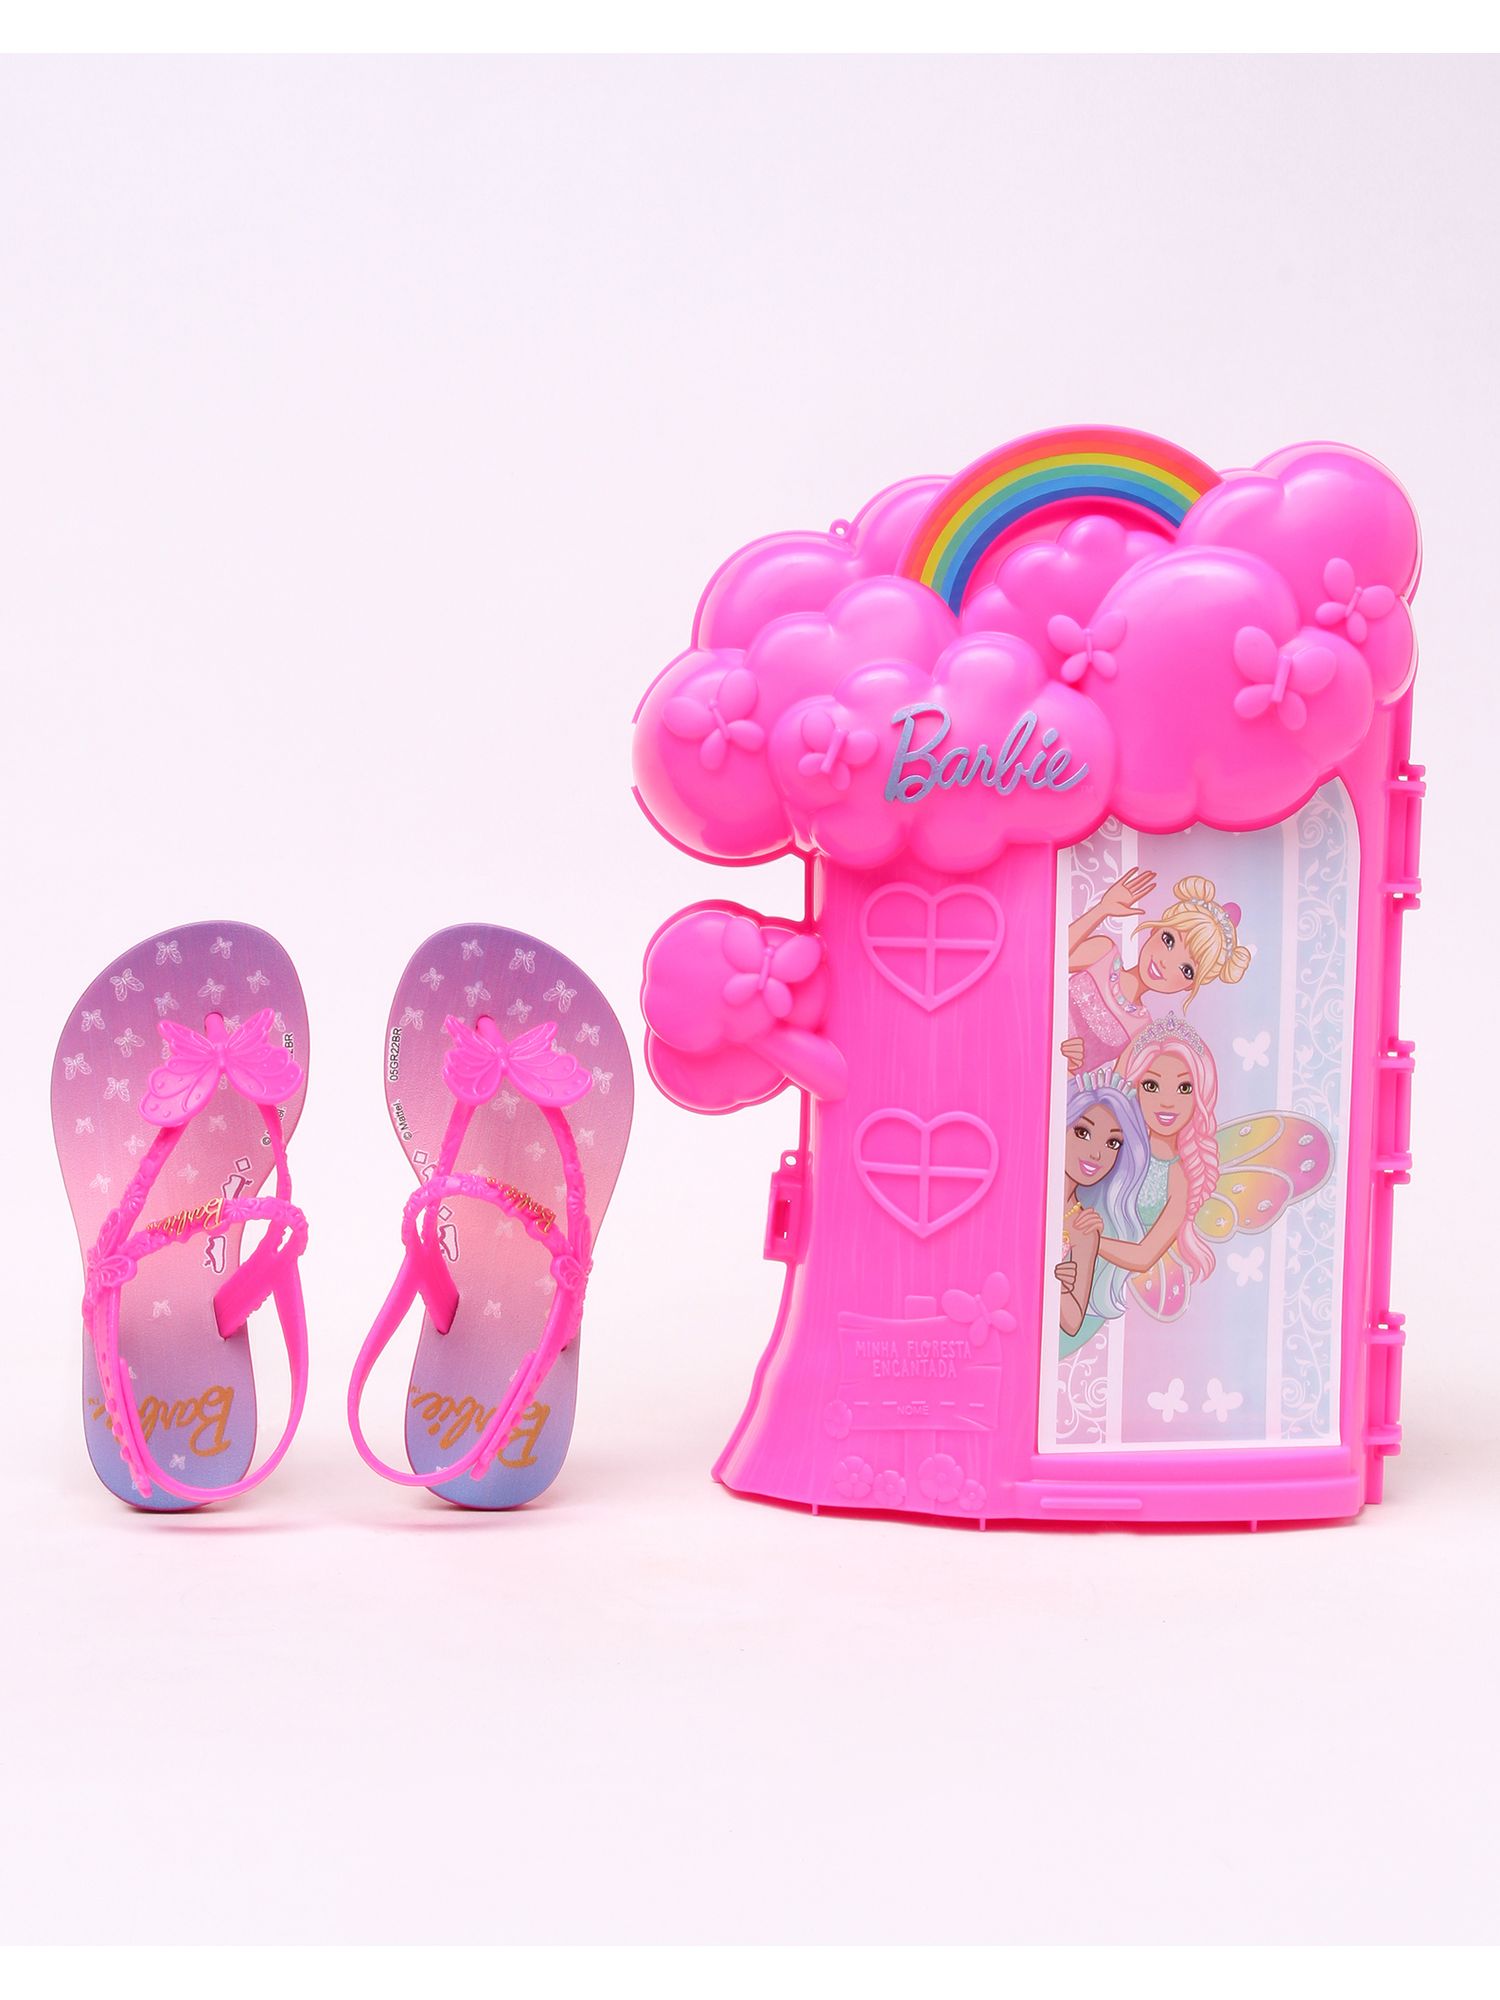 Casa Portatil Da Barbie Com Piscina E Acessórios Infantil